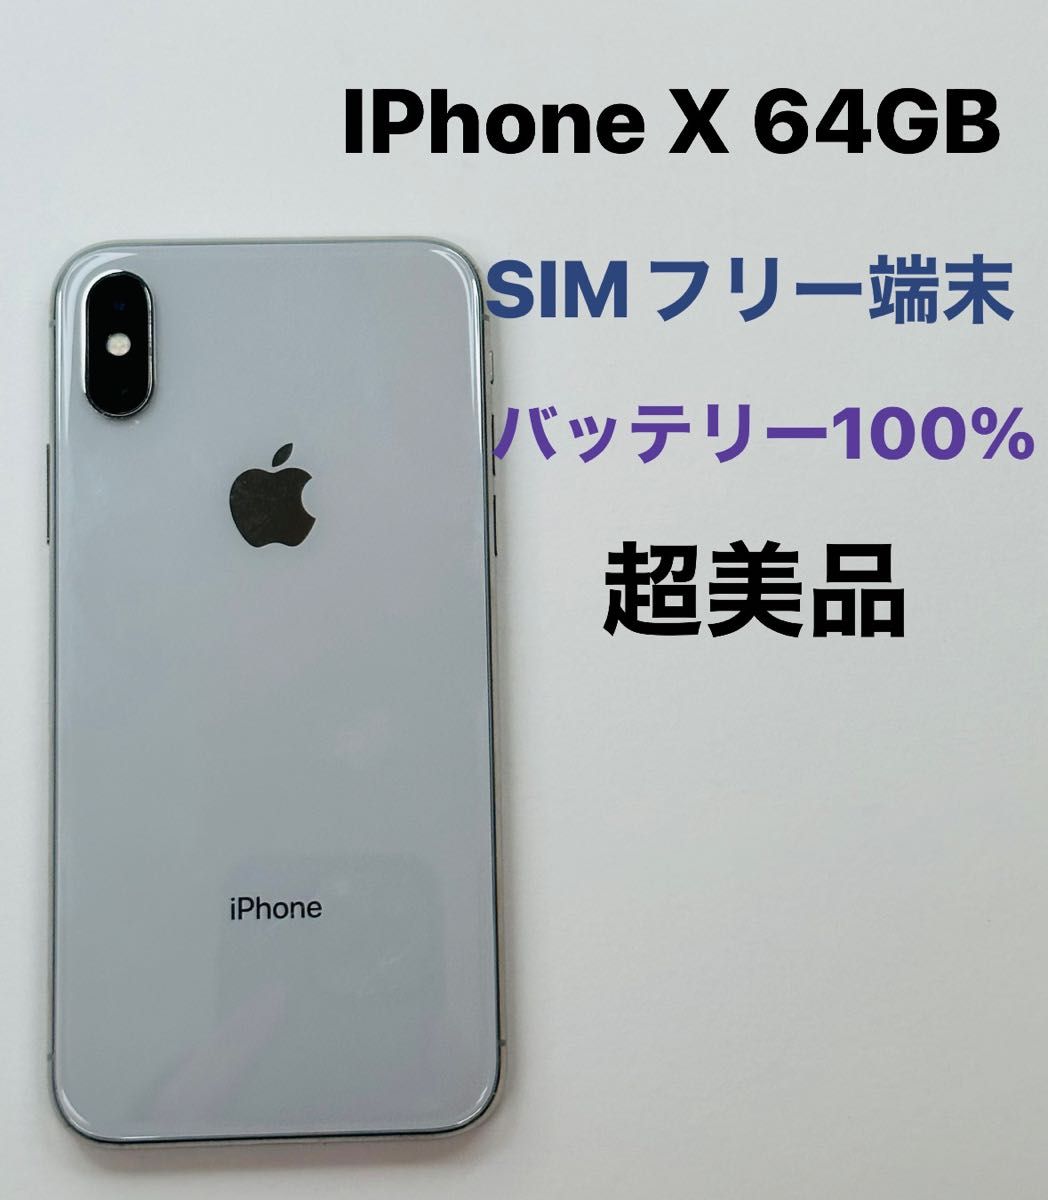 iPhone x ホワイト 64GB SIMフリー iPhone X - スマートフォン/携帯電話